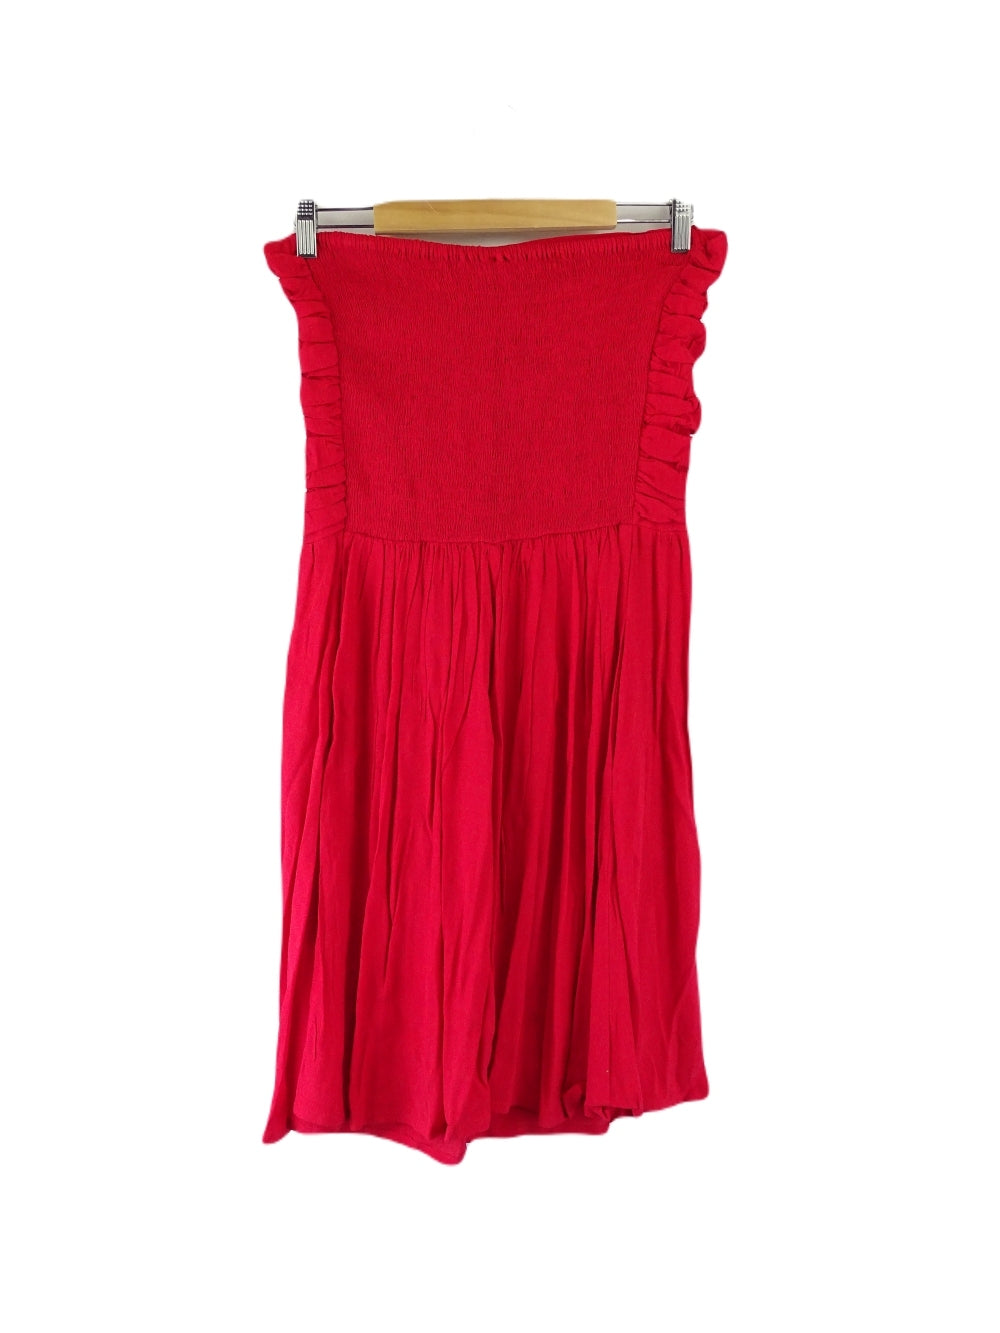 Natasha Gan Red Dress 14